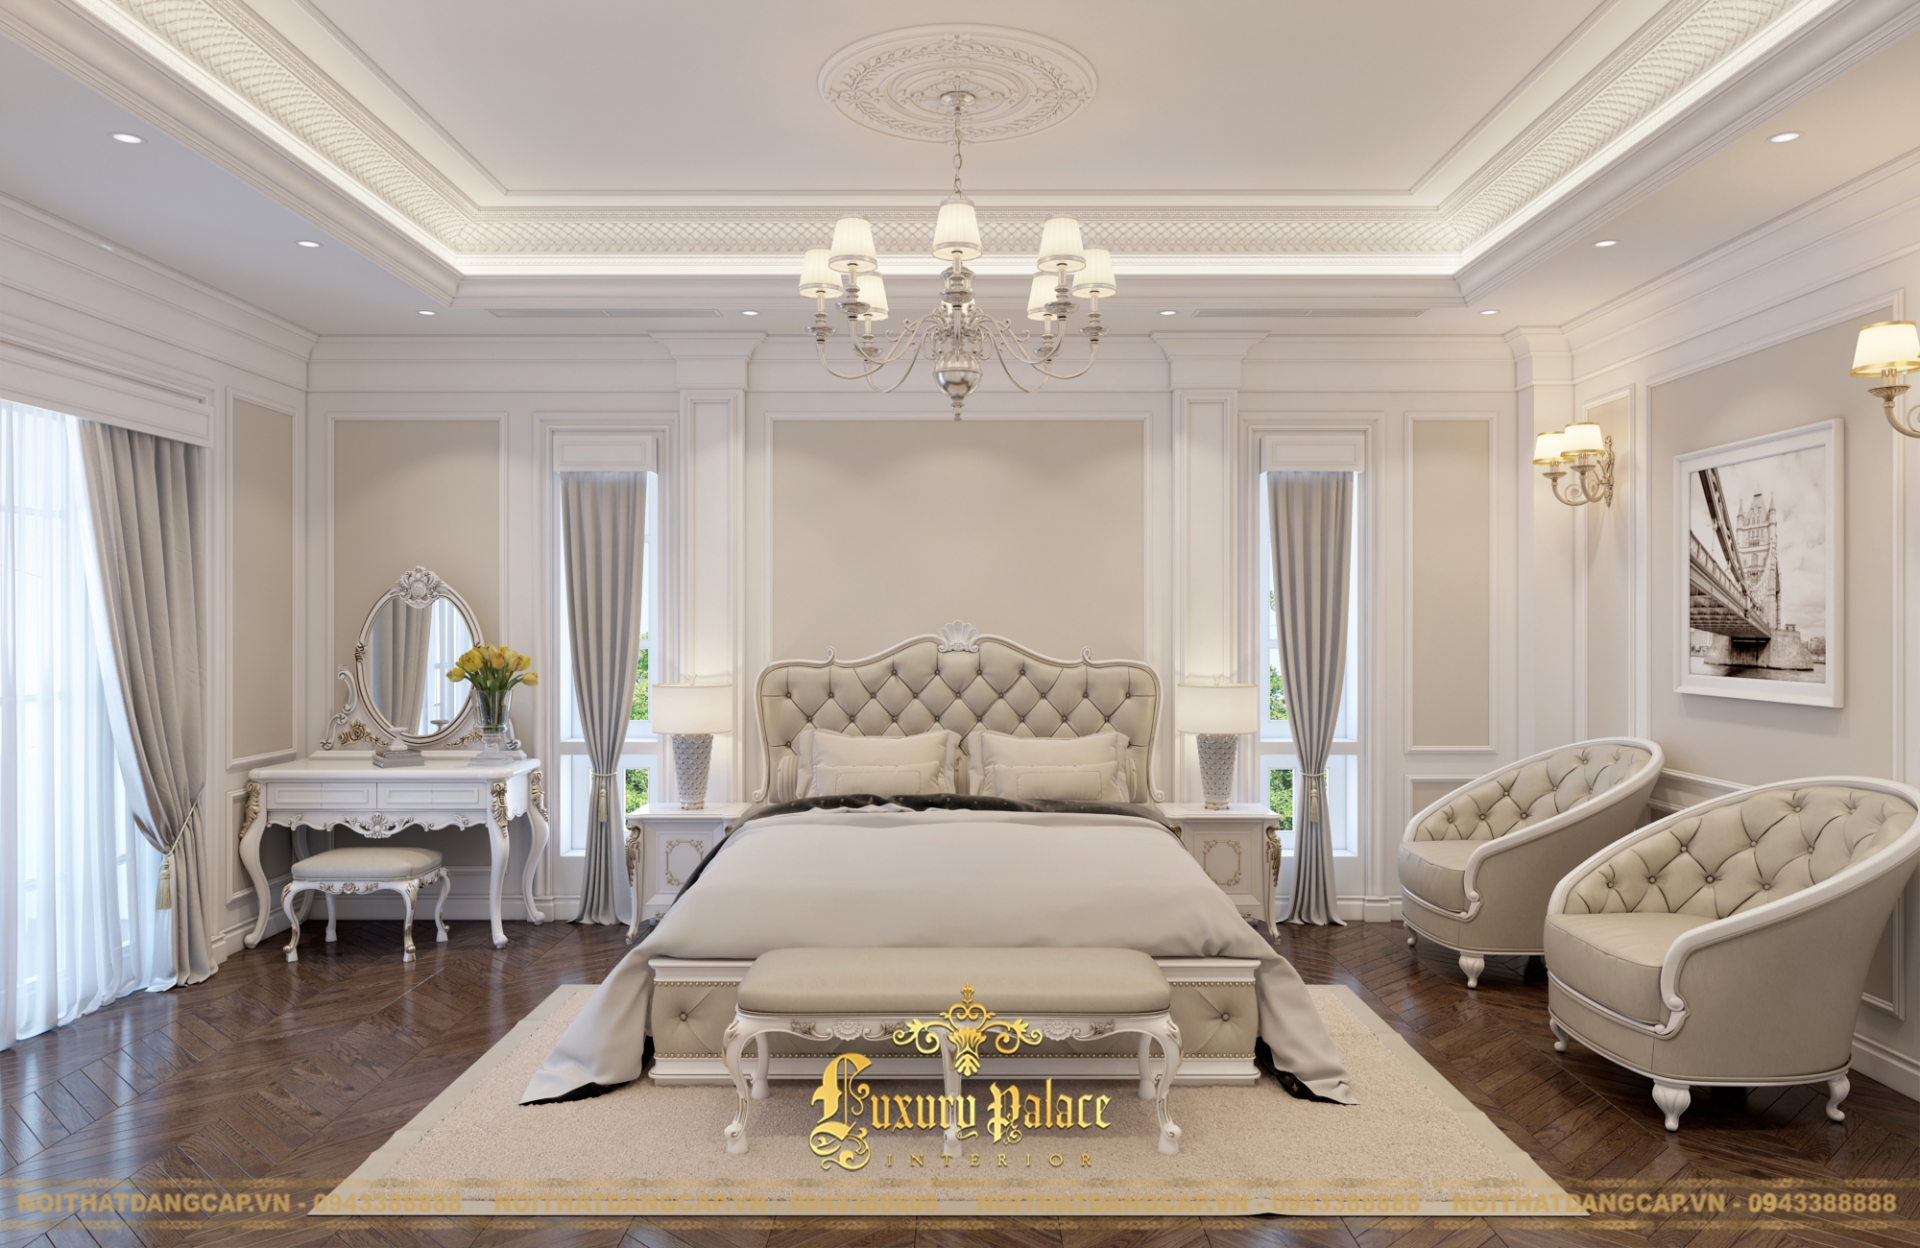 Mẫu thiết kế phòng ngủ phong cách tân cổ điển châu Âu 3